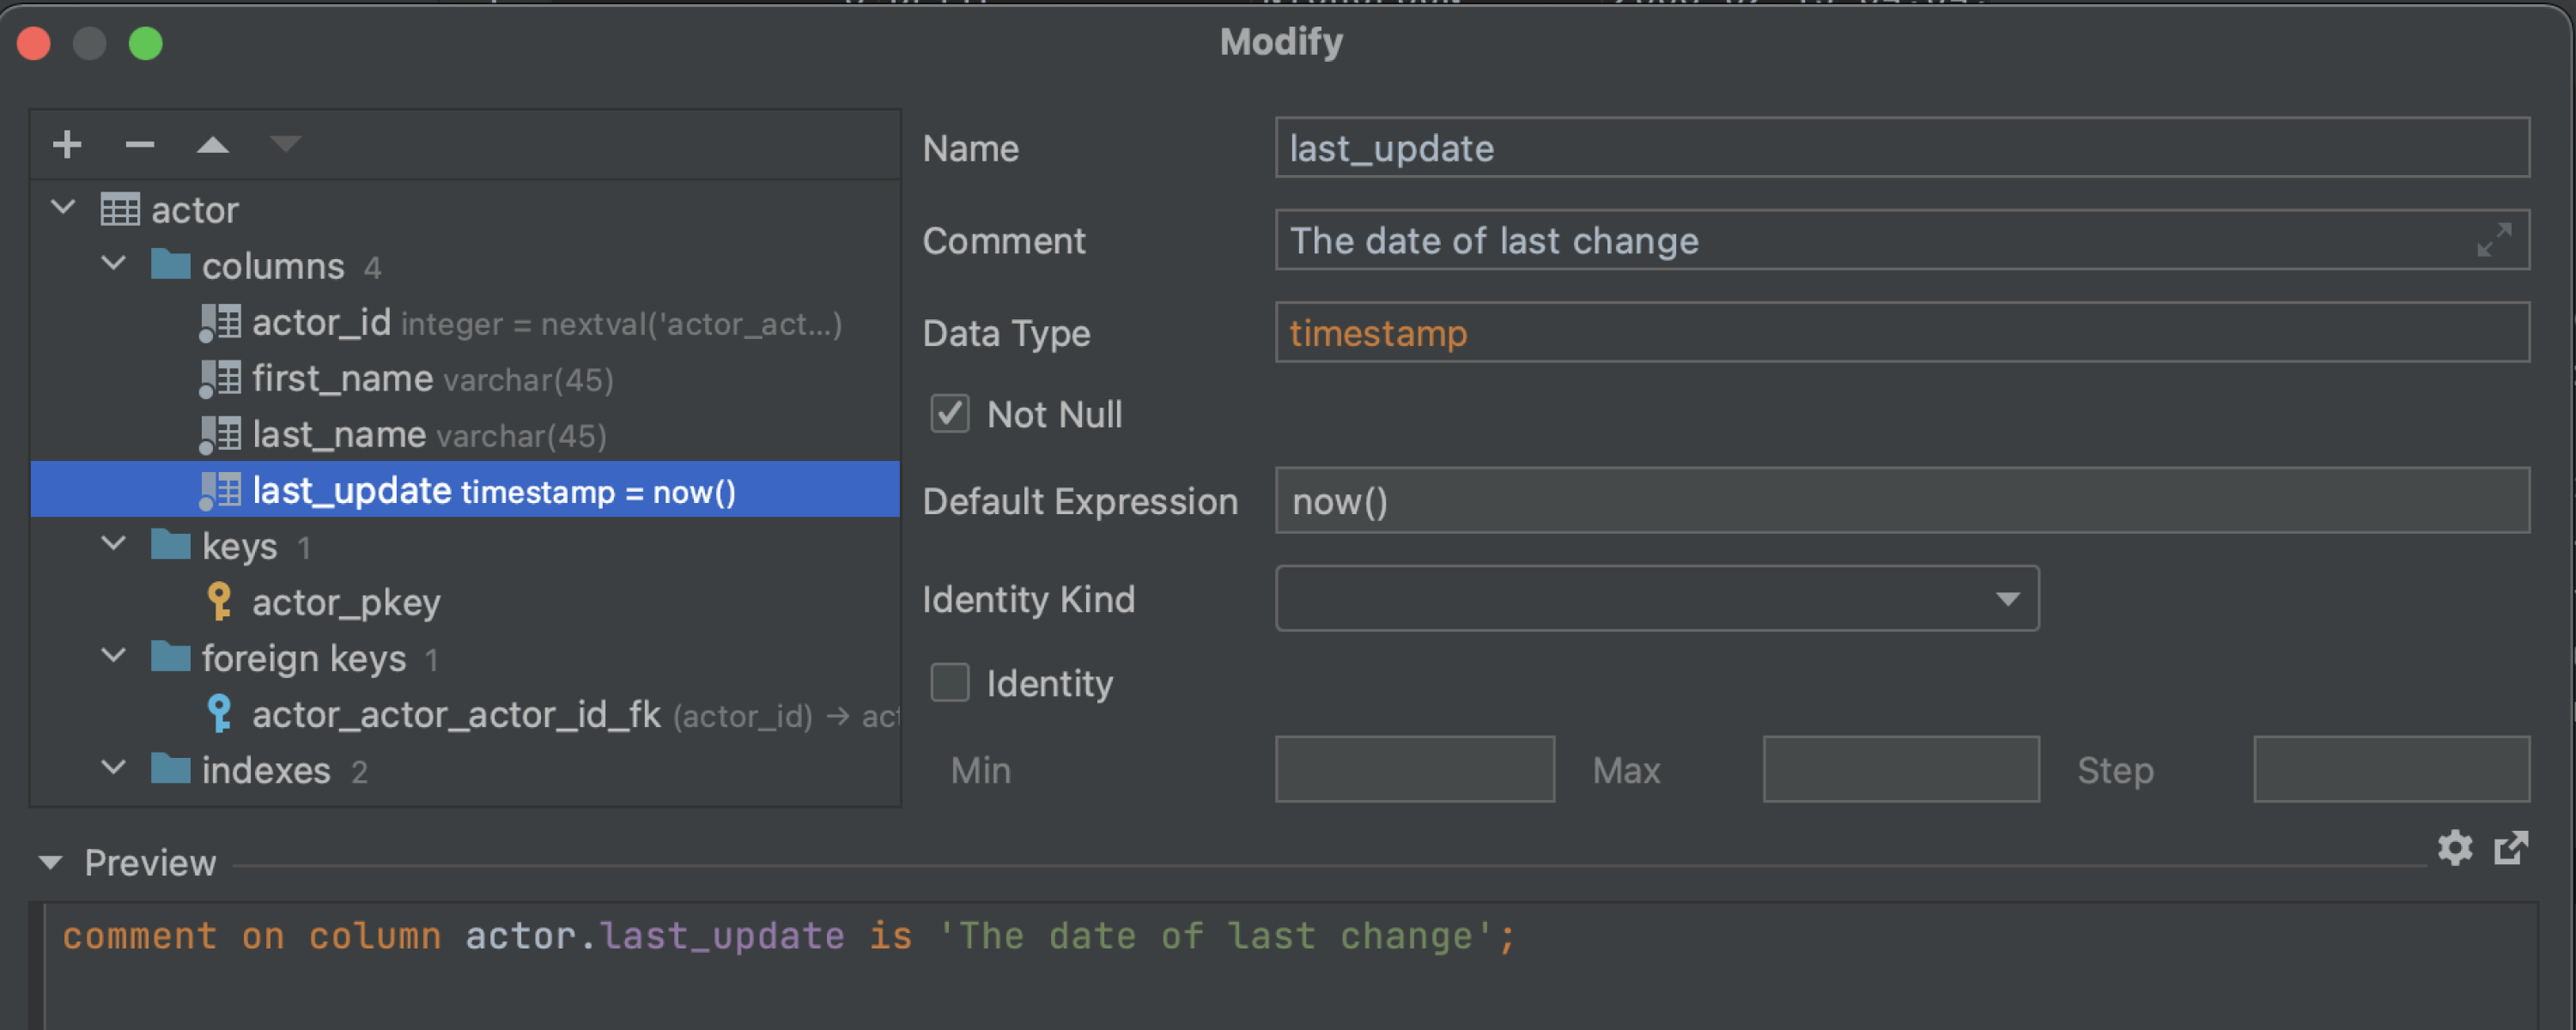 New UI for the Modify dialog